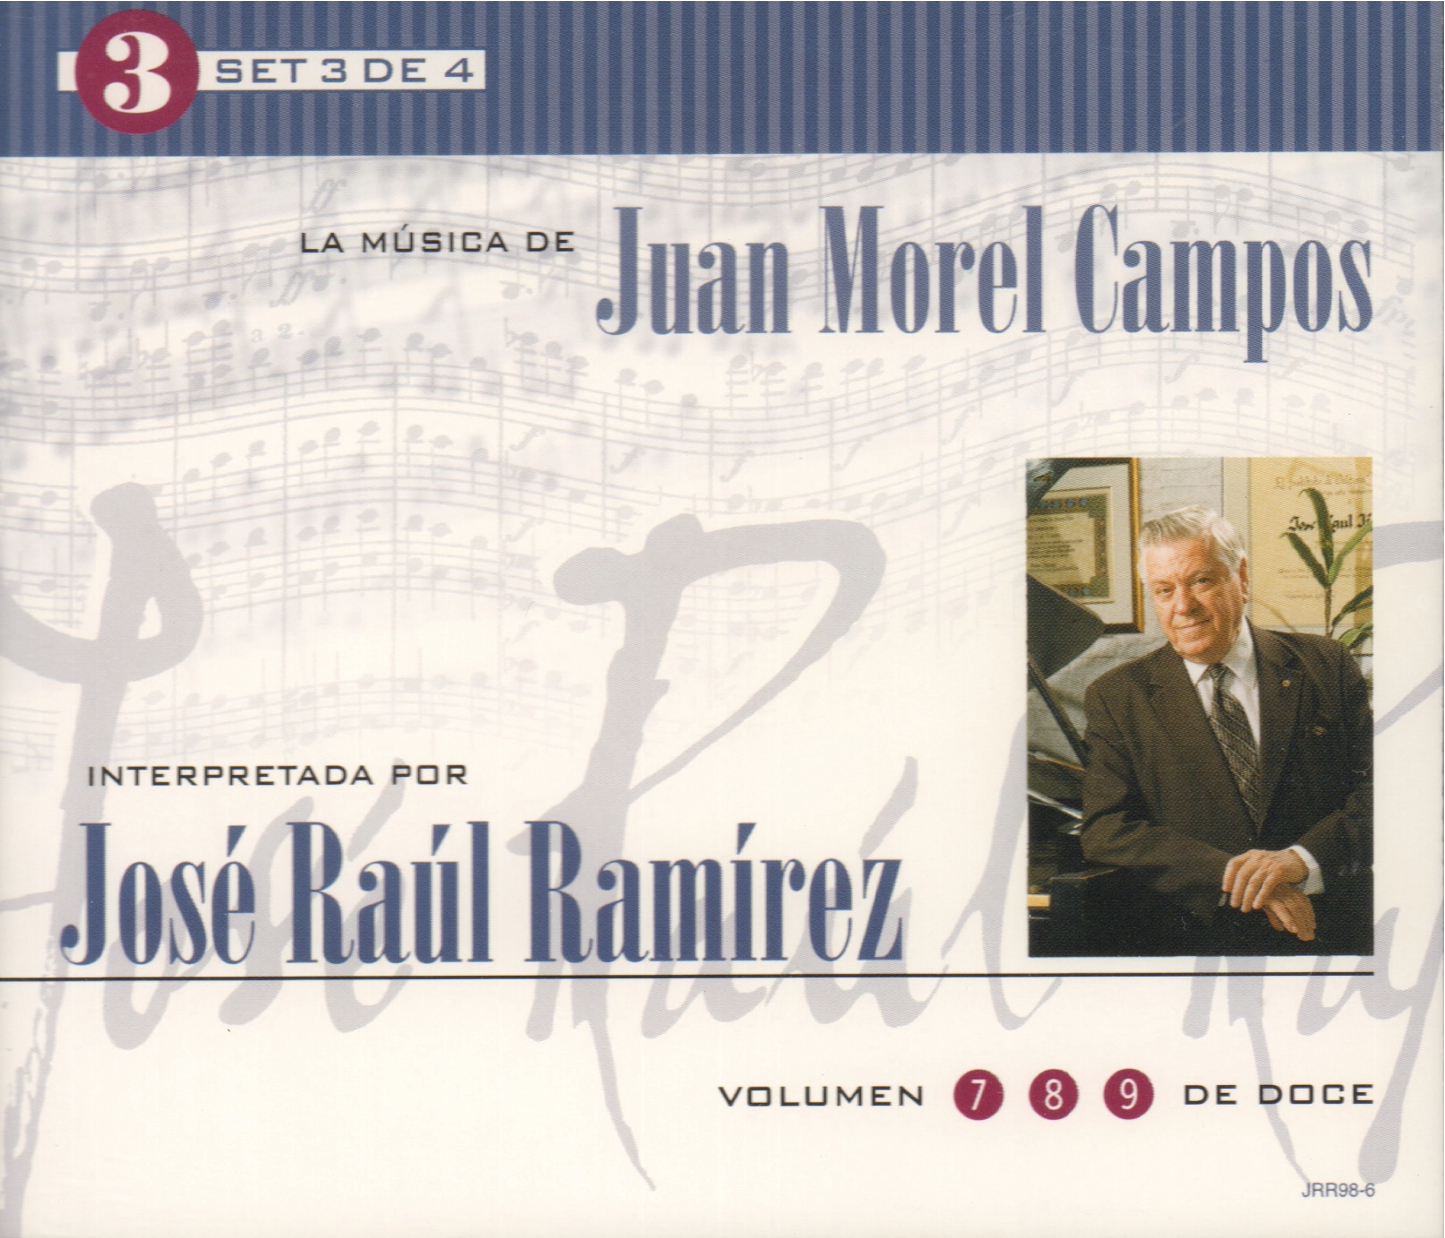 Set 3 de 4: La Música de Juan Morel Campos interpretada por José Raúl Ramírez